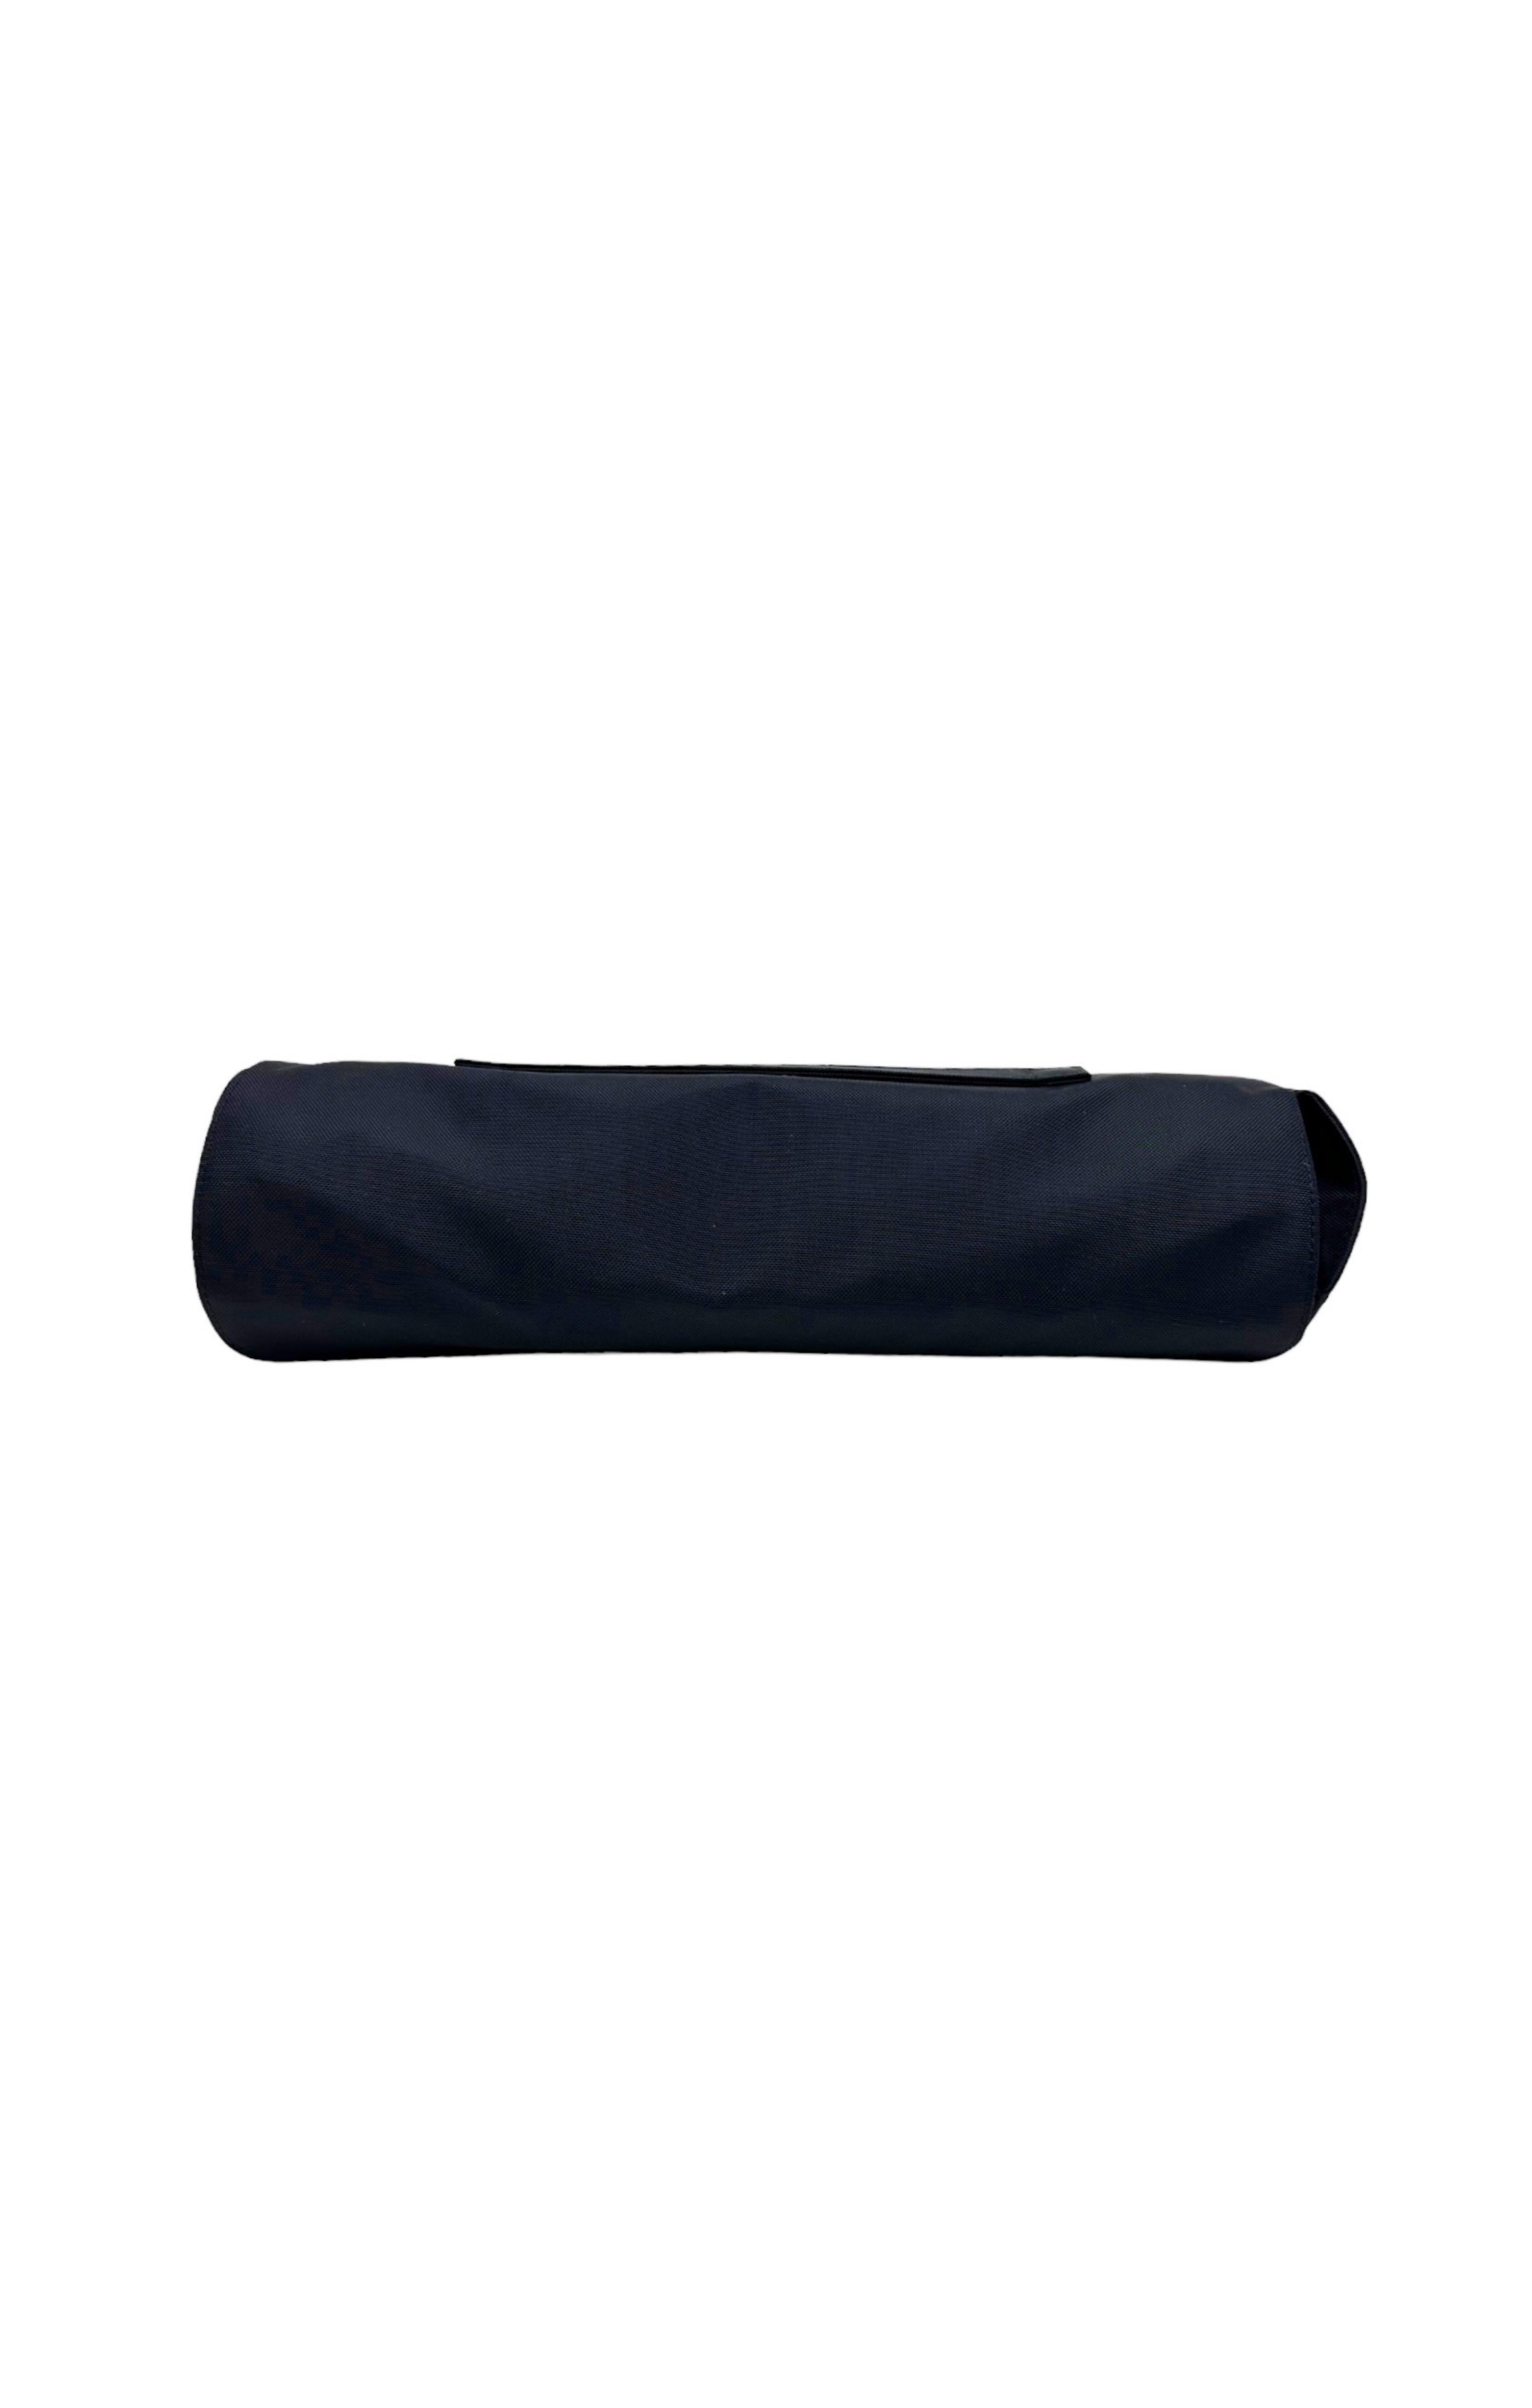 LOUIS VUITTON Luggage & Sleeve Set Size: 17.5 x 9.25 x 25.5; 13.75 –  Kardashian Kloset